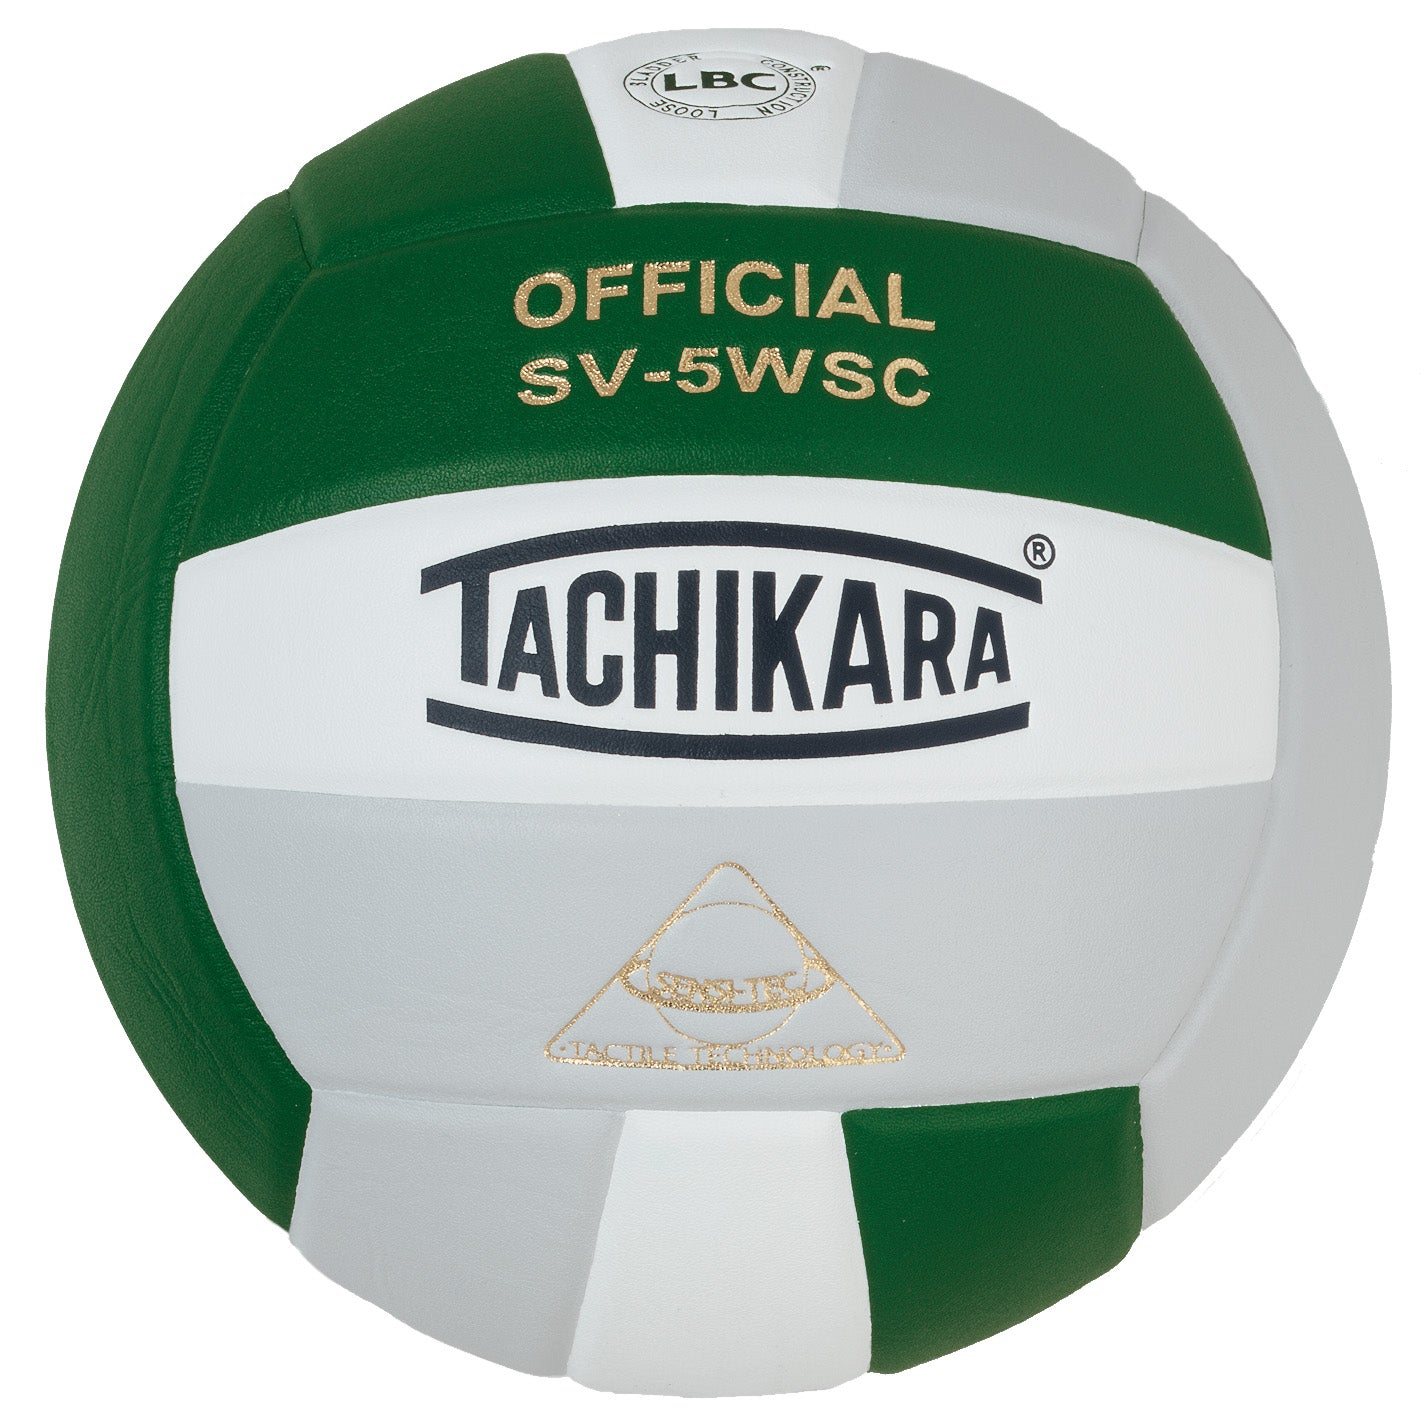 Tachikara SV5WSC Super Soft Volleyball Dark Green/White/Silver Grey